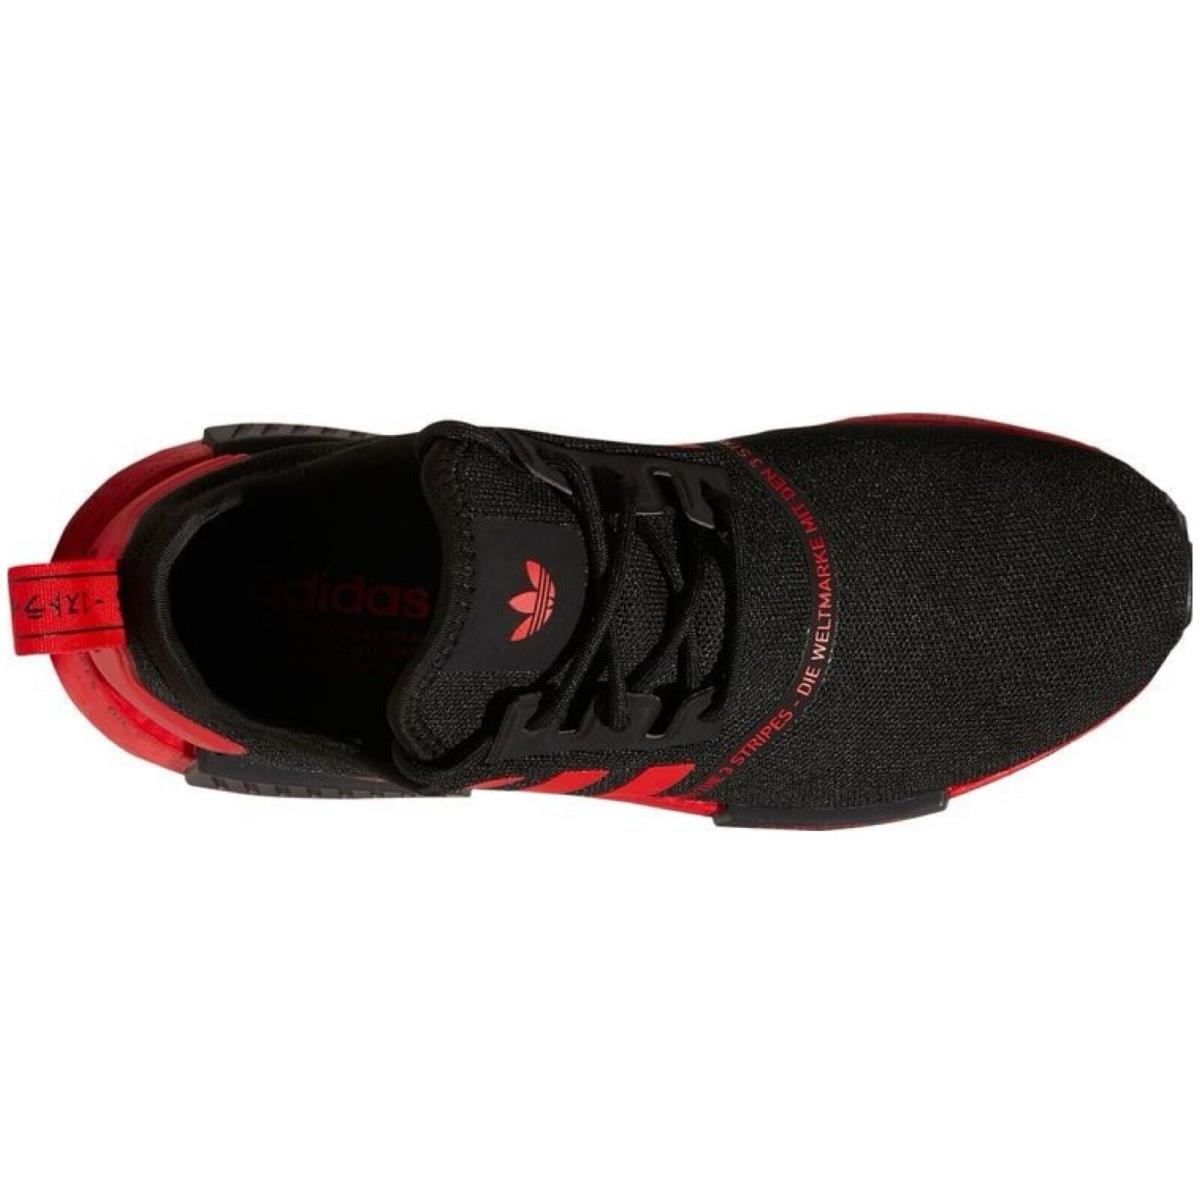 Adidas shoes Originals - Black , BLACK/RED/BLACK Manufacturer 7